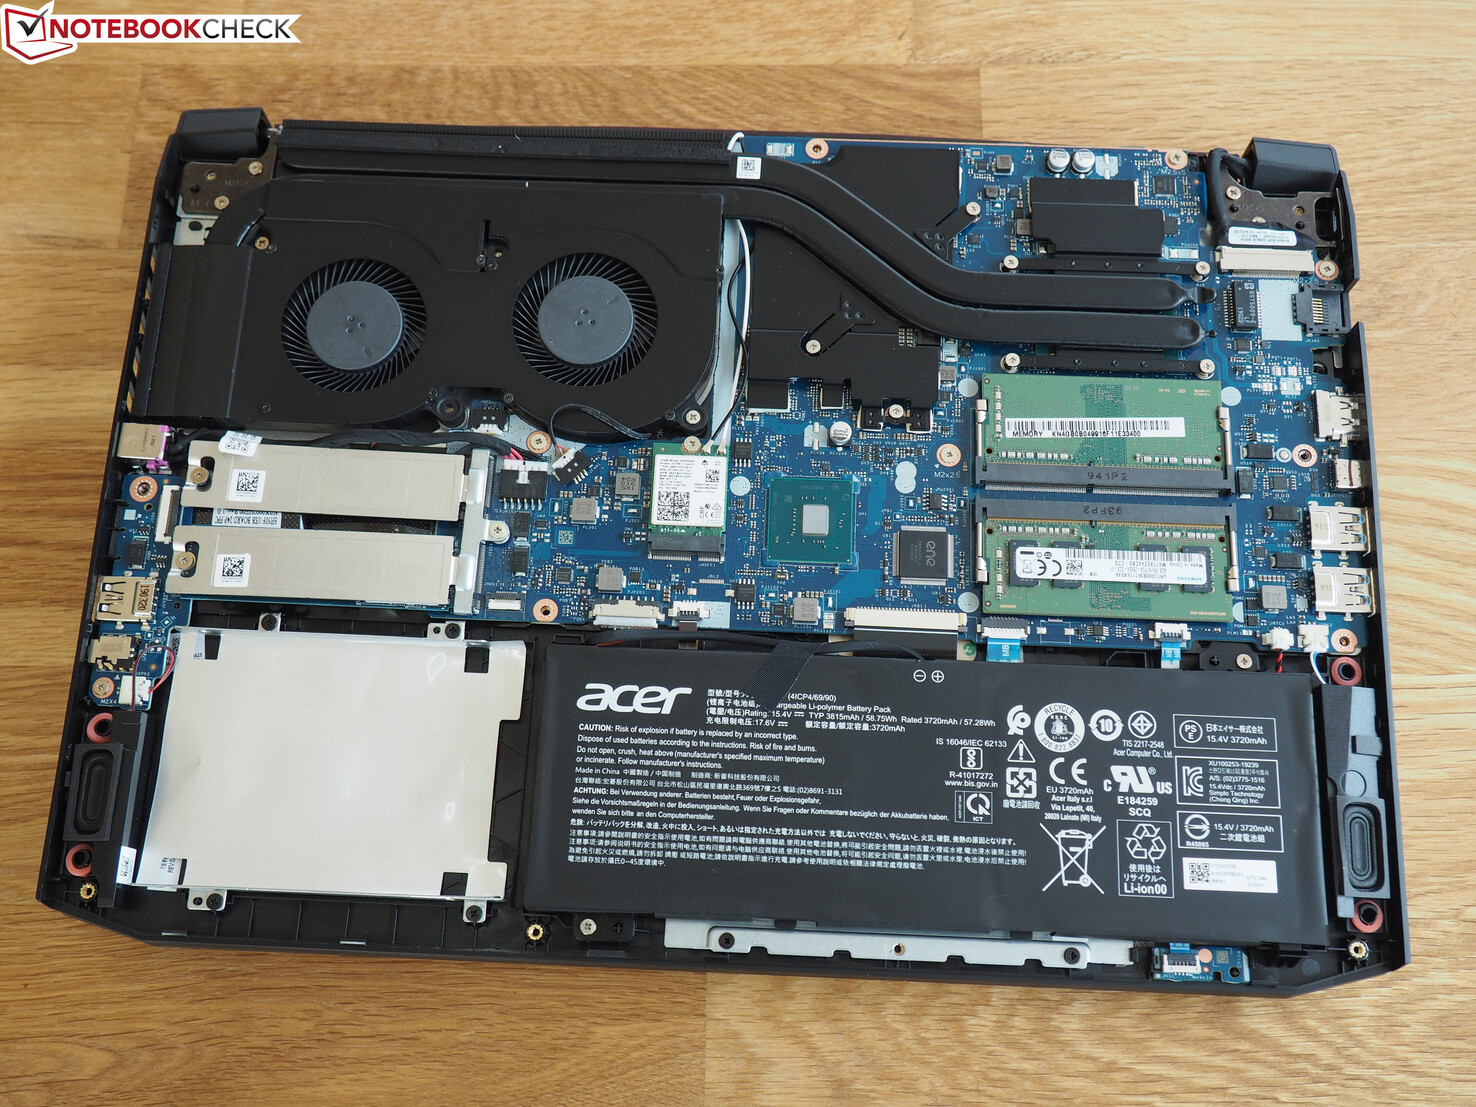 Acer Nitro 5 (Core i5-9300H, GeForce 